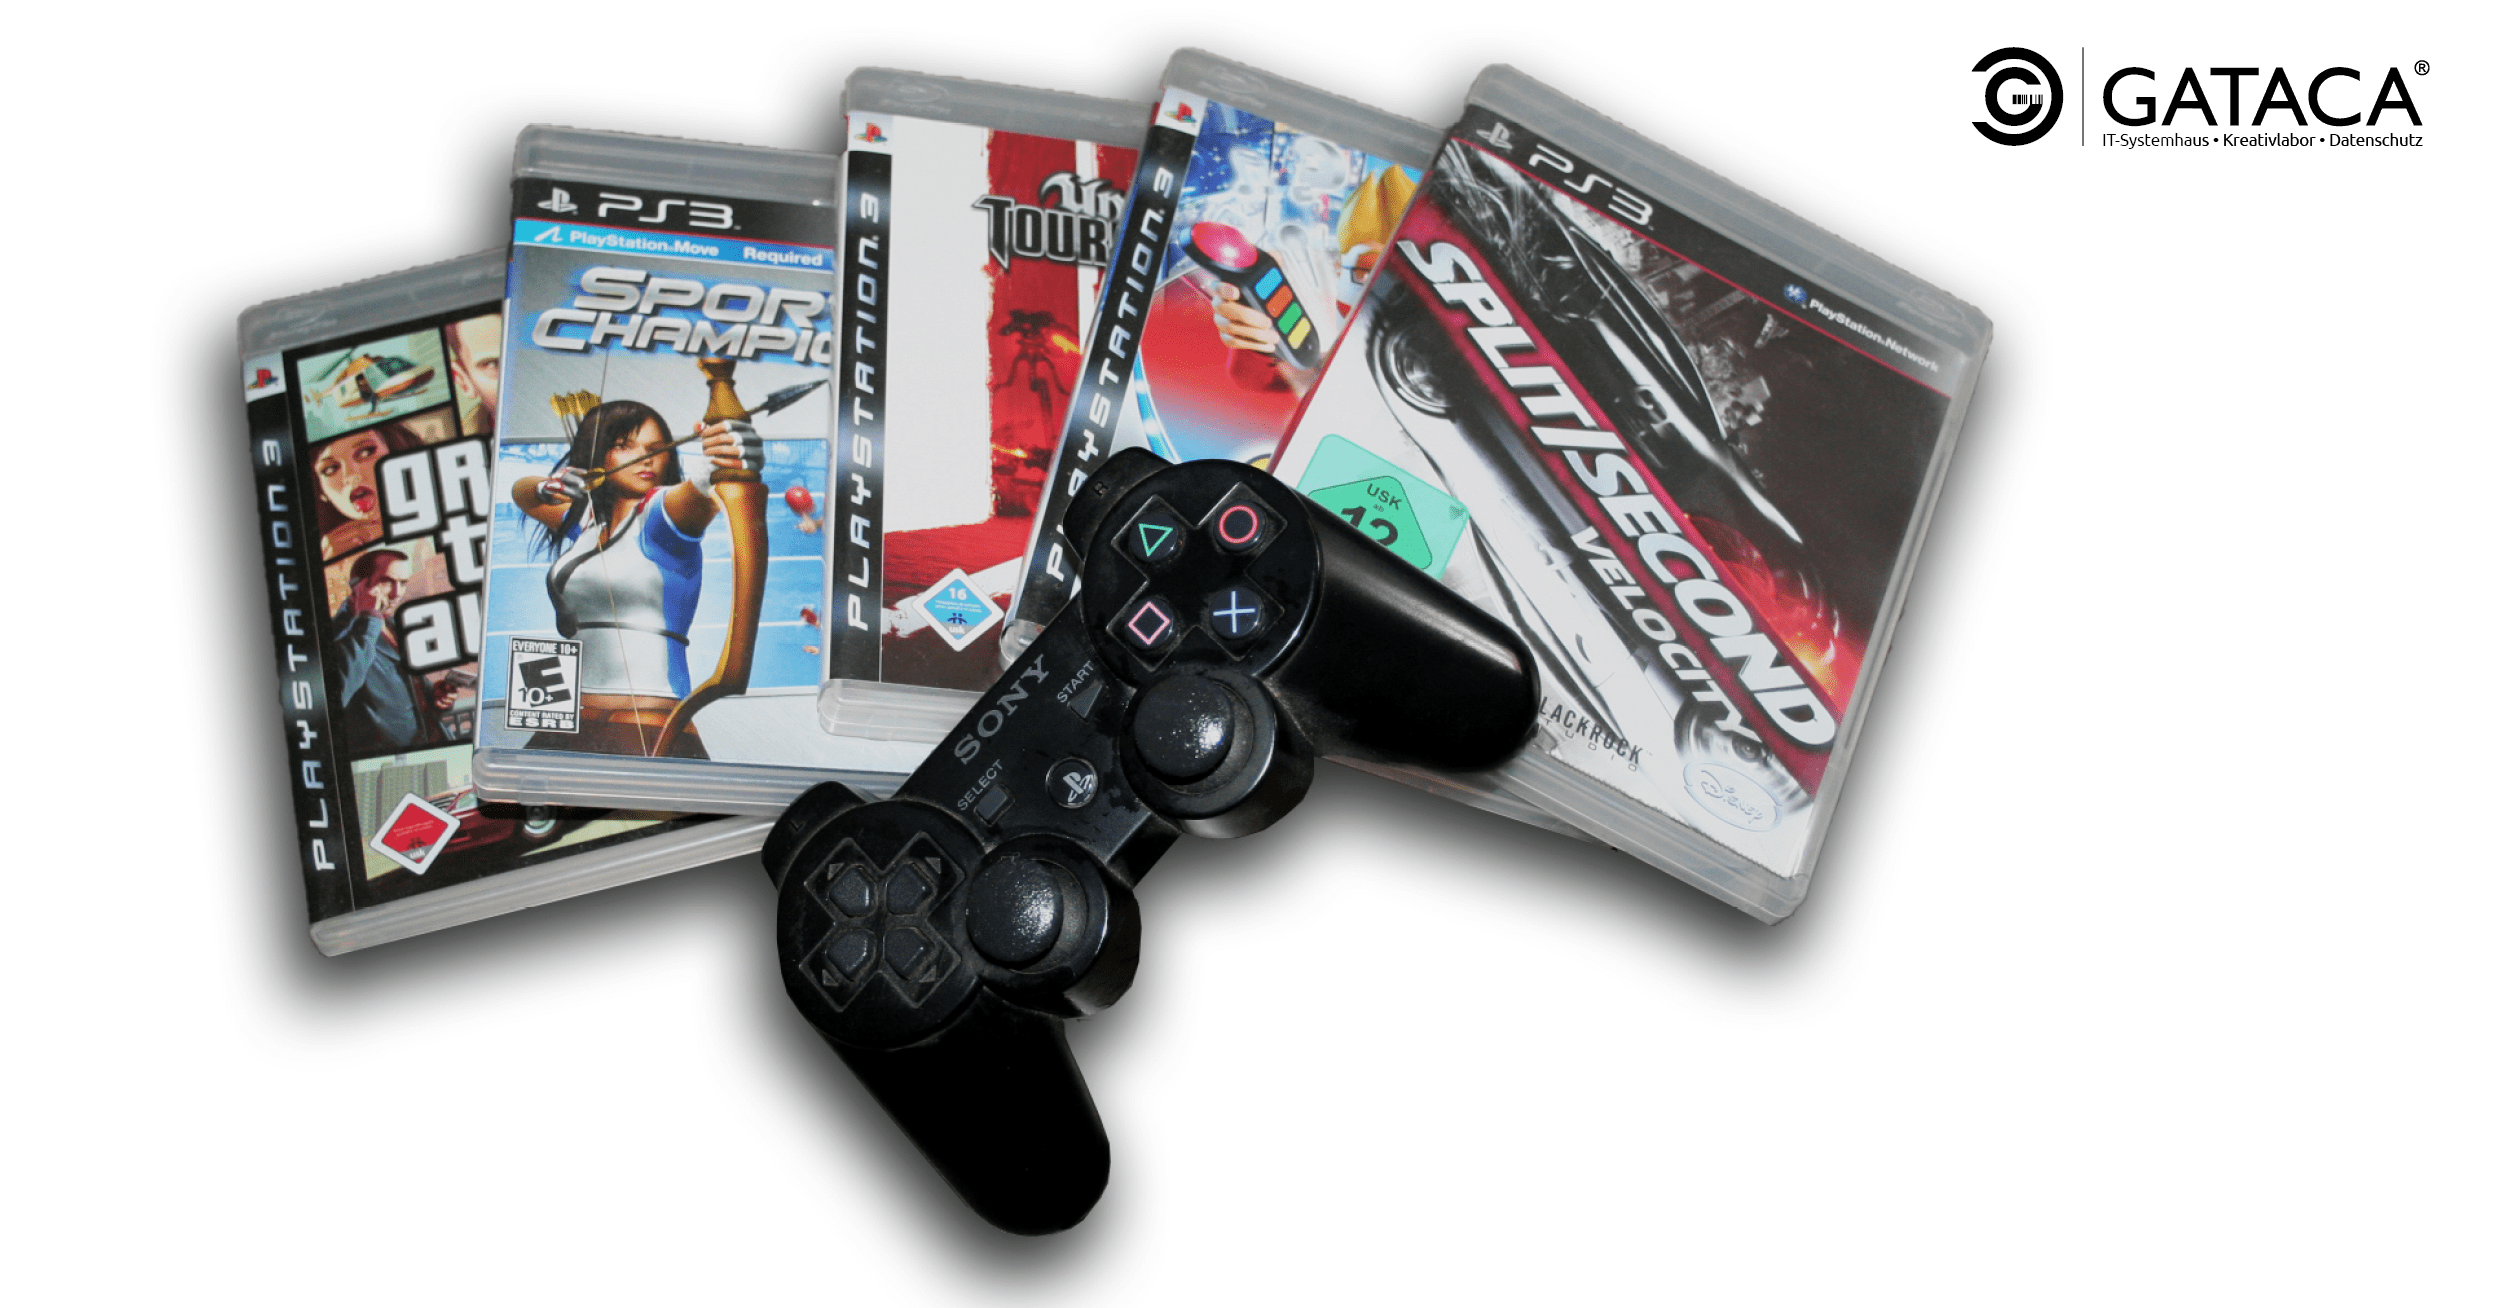 Eine Anreihung von PS3 Spielen mit Playstation Controller